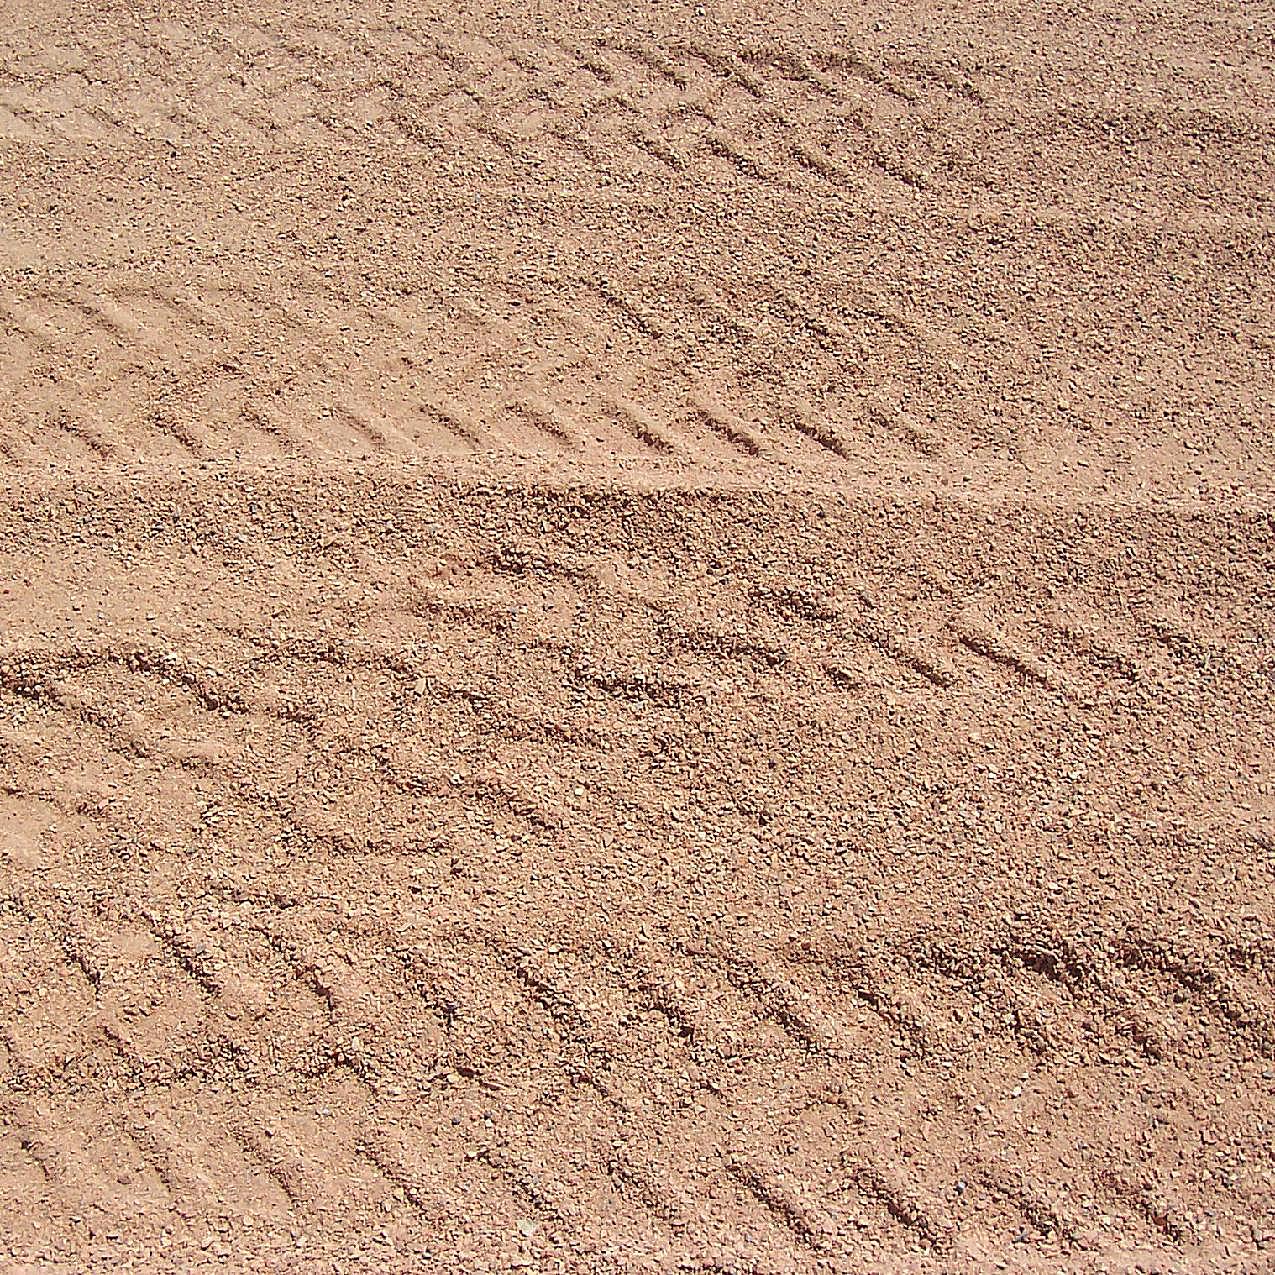 沙子地面轮胎印迹背景图片地面背景